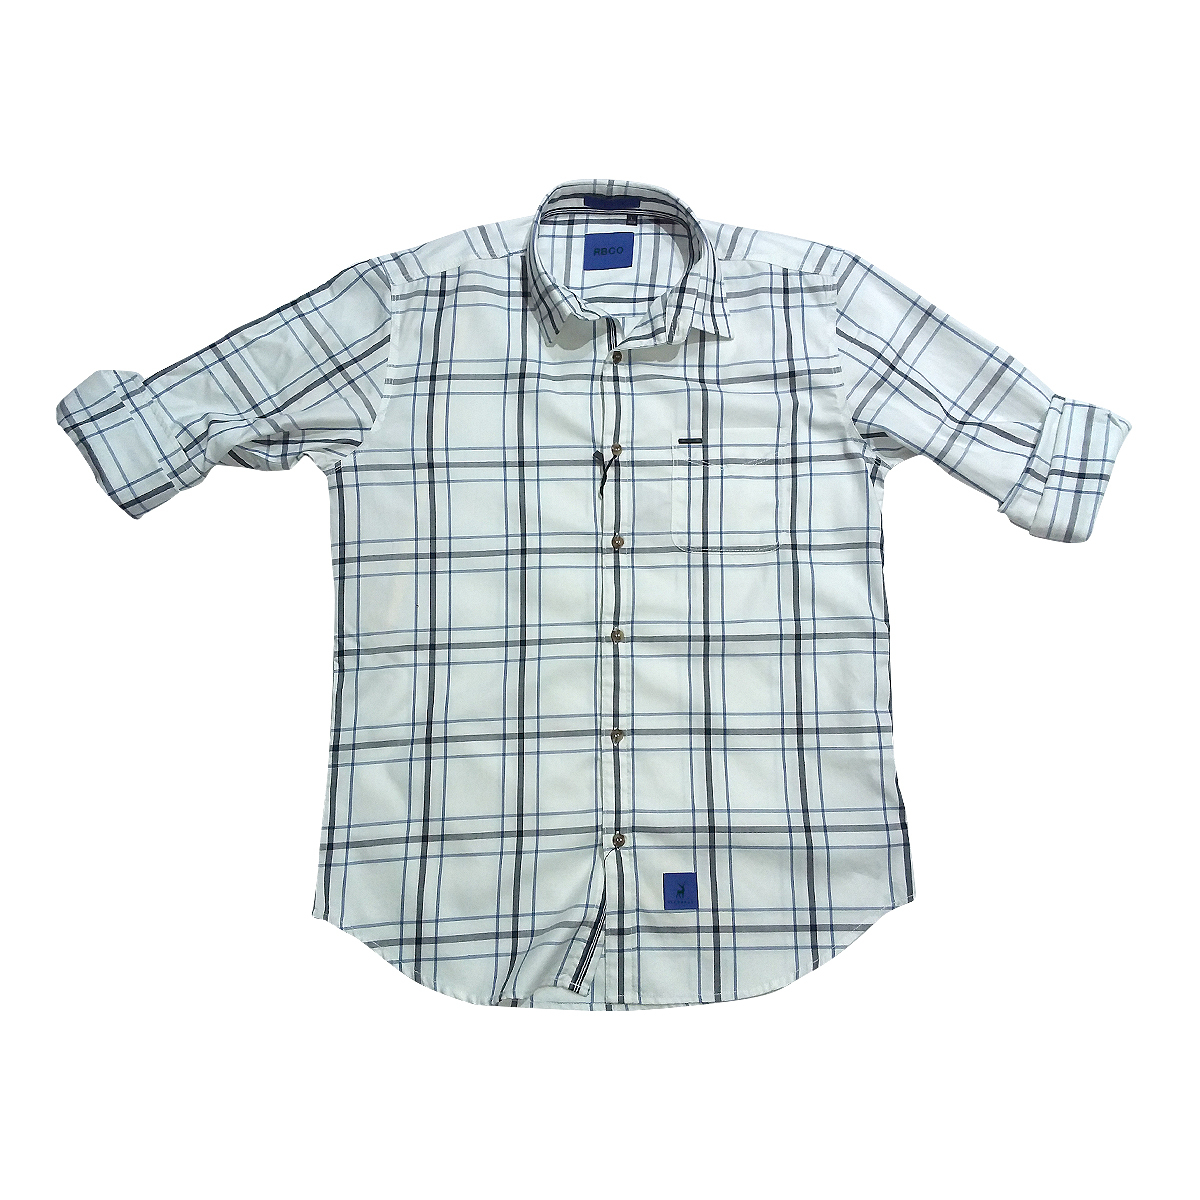 River Blue Mens Shirt  Sm-02970  Full Sleeves White